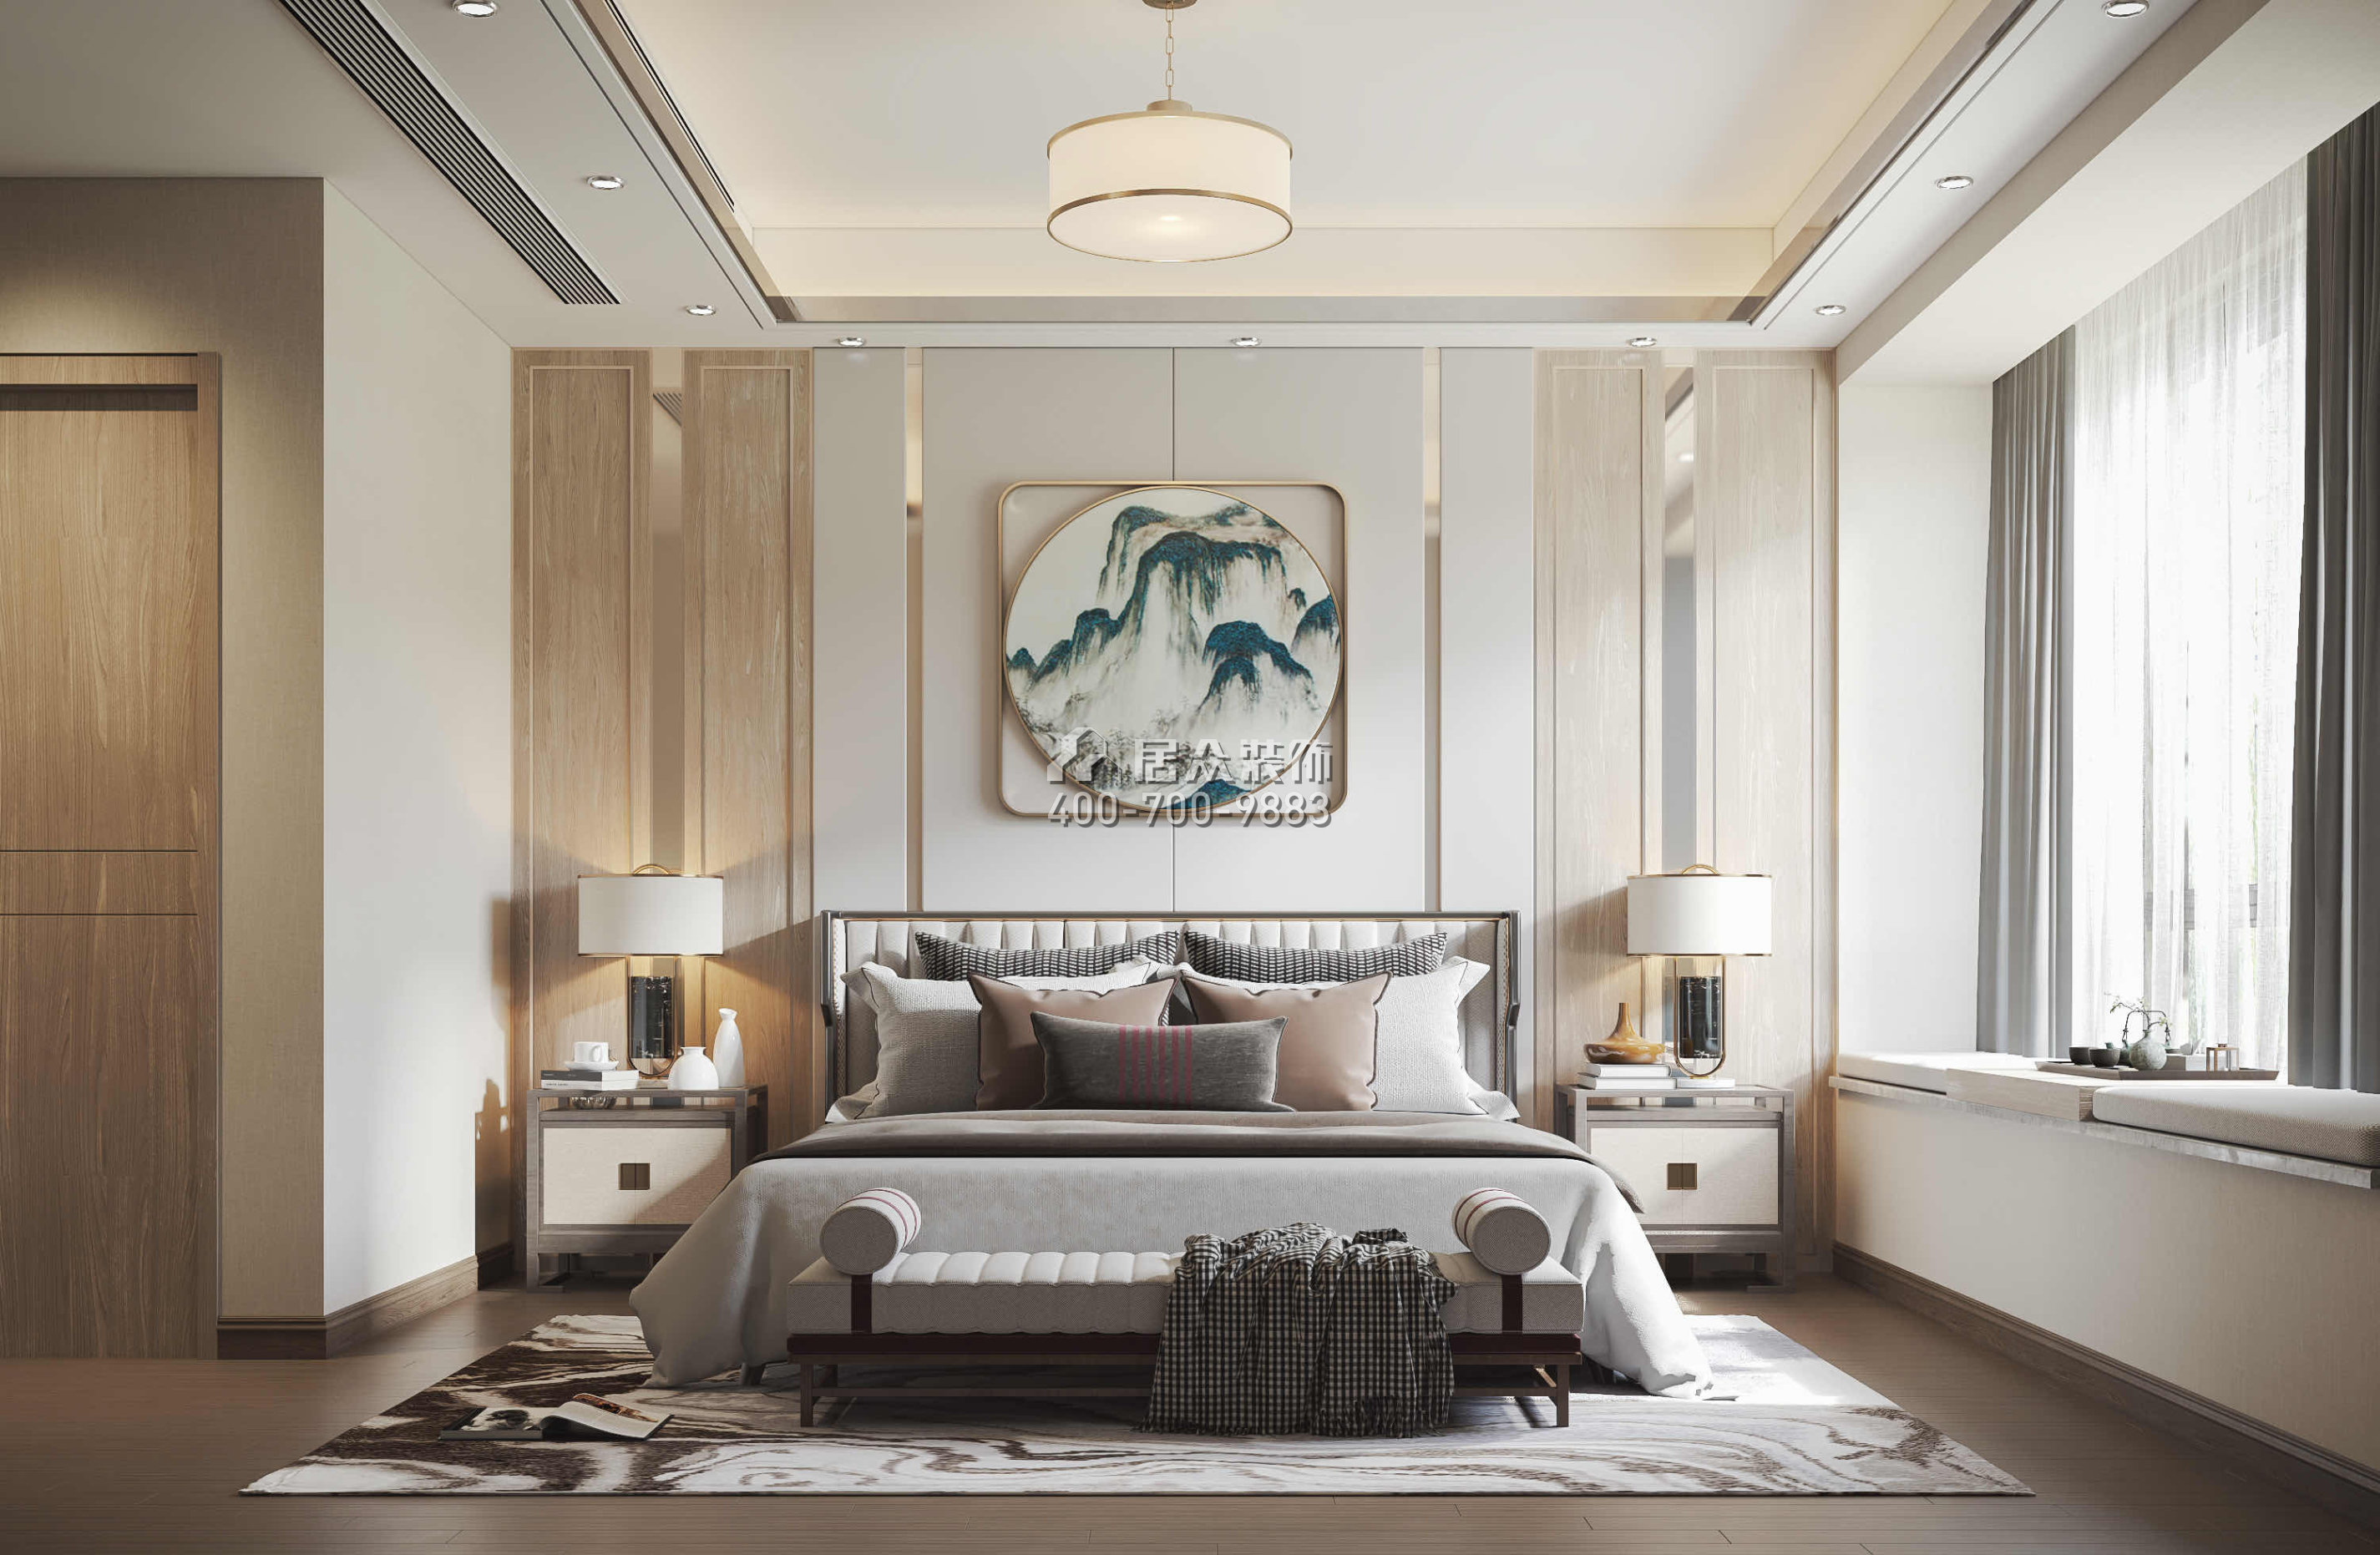 翠湖香山别苑188平方米中式风格复式户型卧室装修效果图